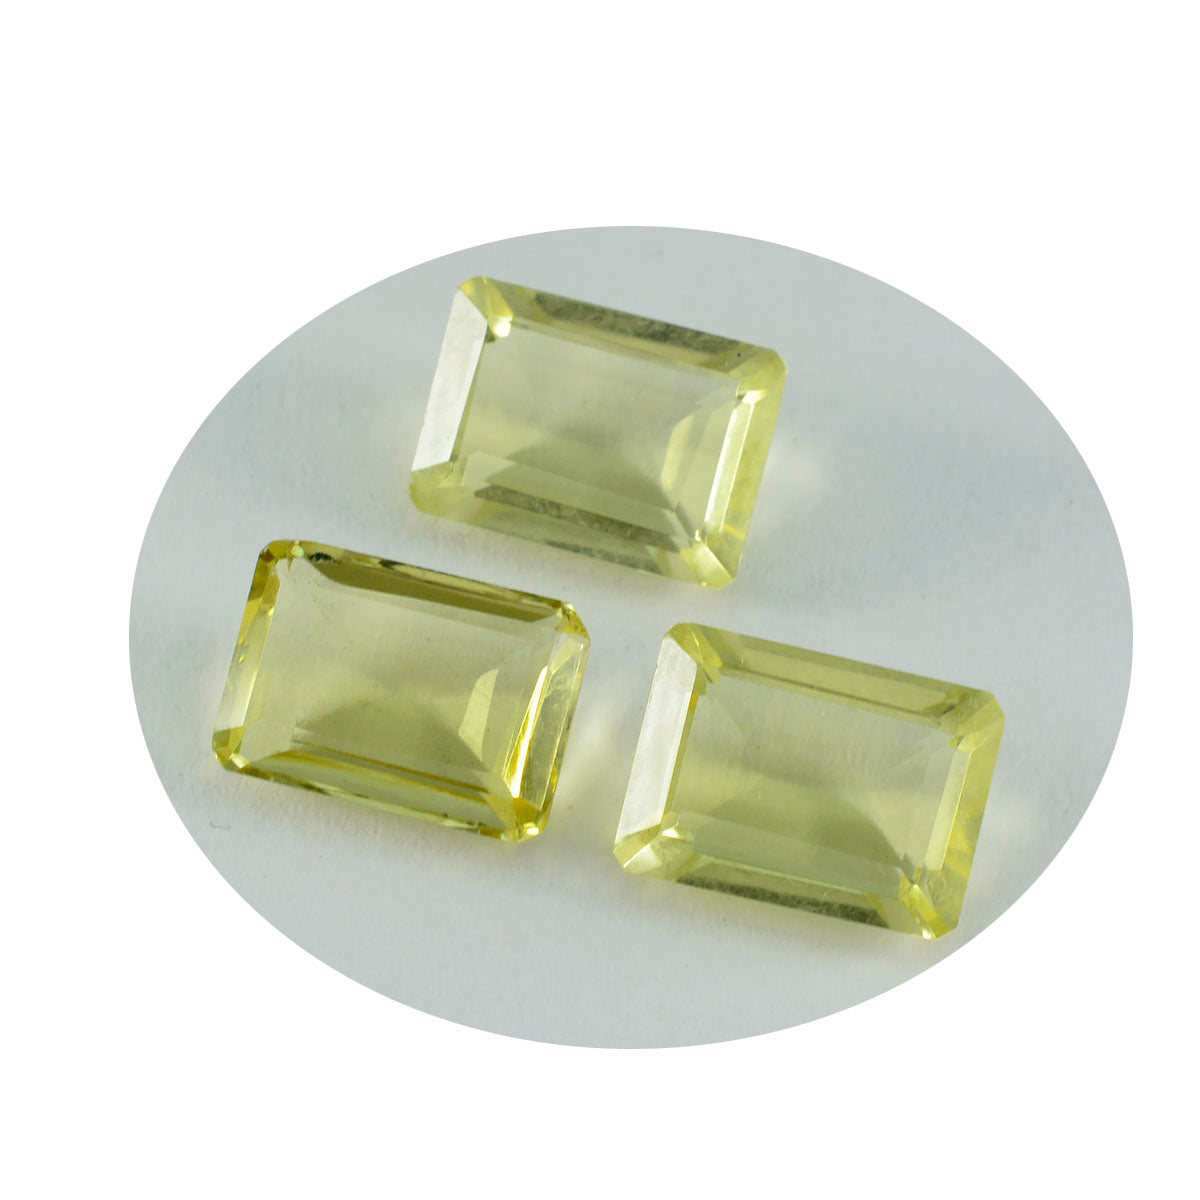 riyogems 1шт желтый лимонный кварц граненый 10х14 мм восьмиугольной формы довольно качественный свободный драгоценный камень